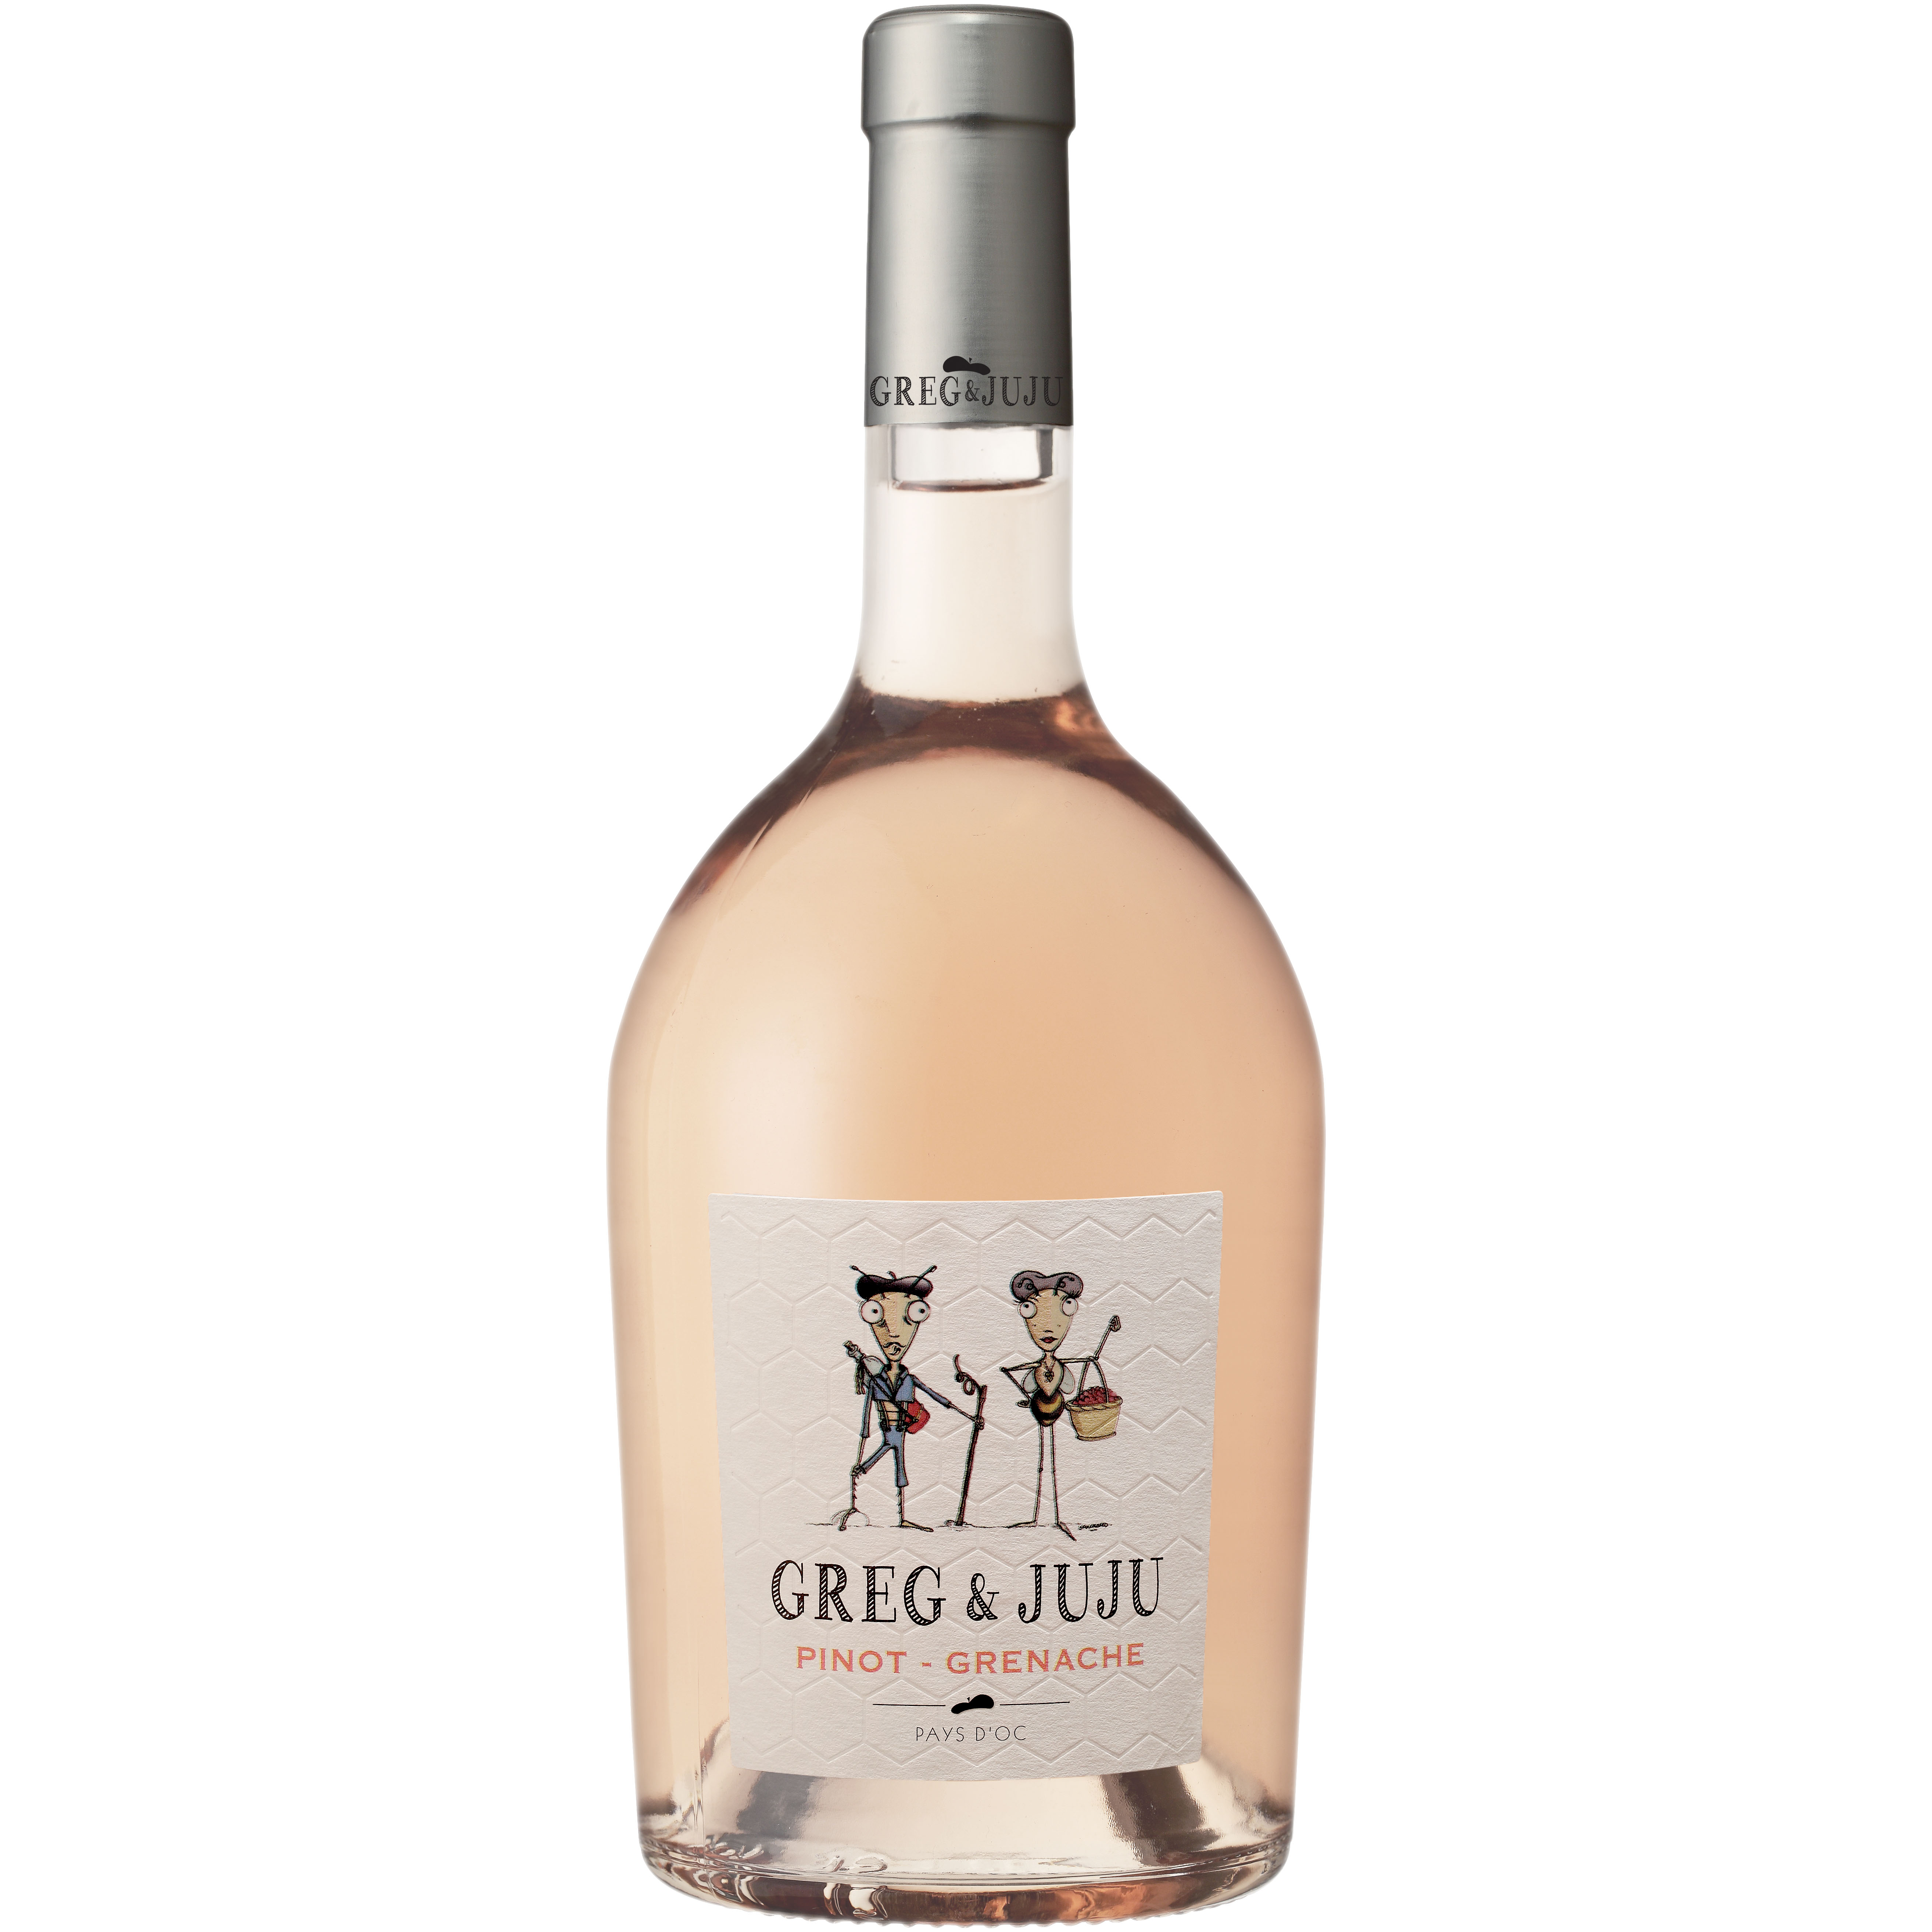 Greg & IGP – Weinladen d Pinot-Grenache Juju ´Oc Mannheim Rosé Pays